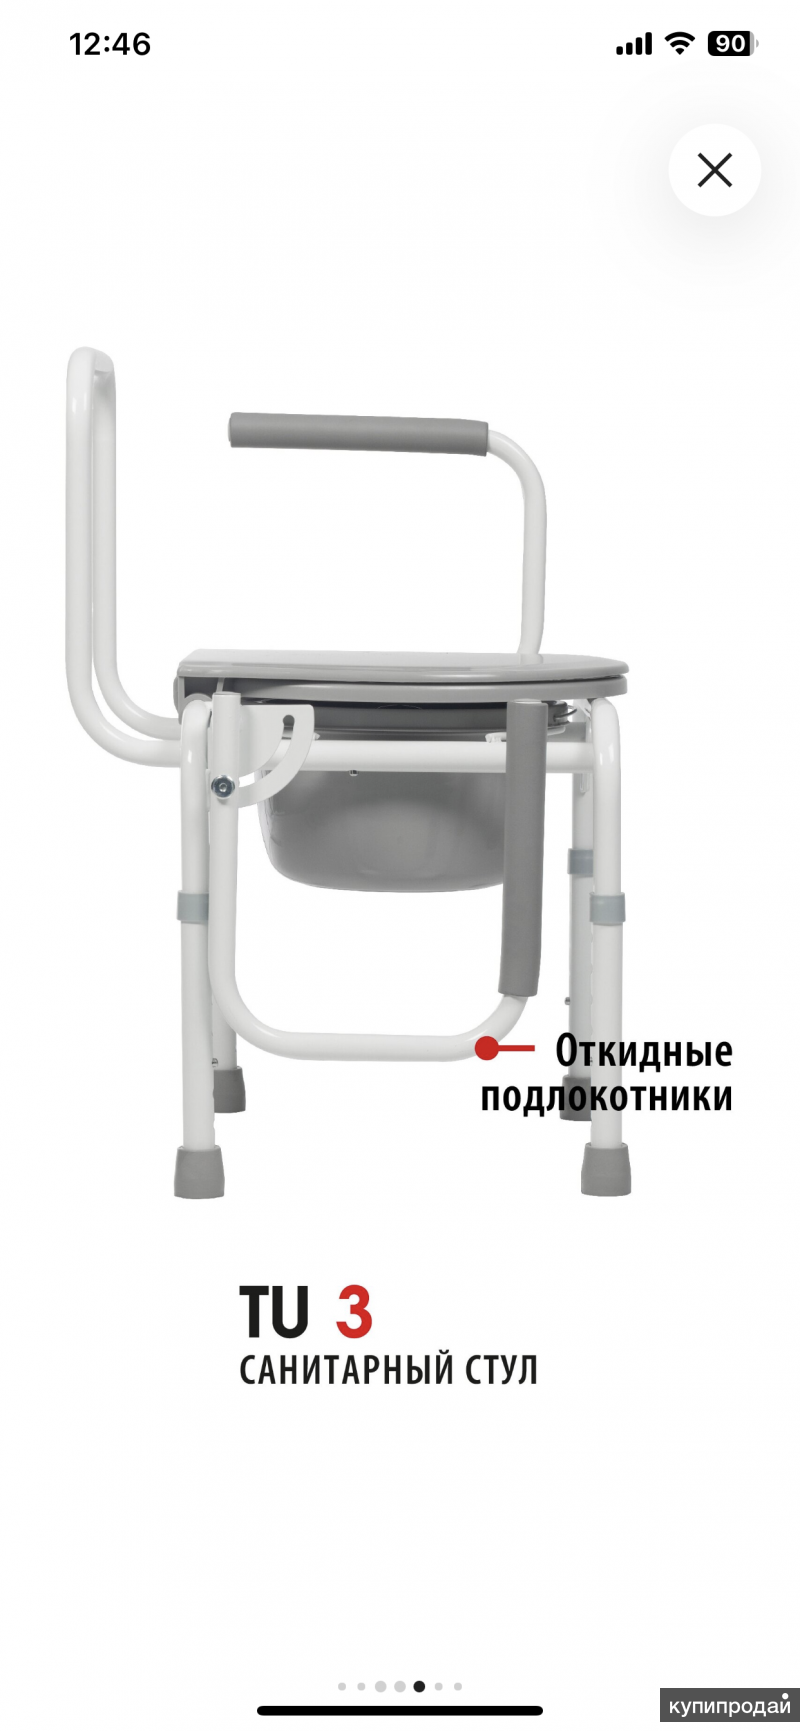 Кресла стулья с санитарным оснащением активно пассивного типа